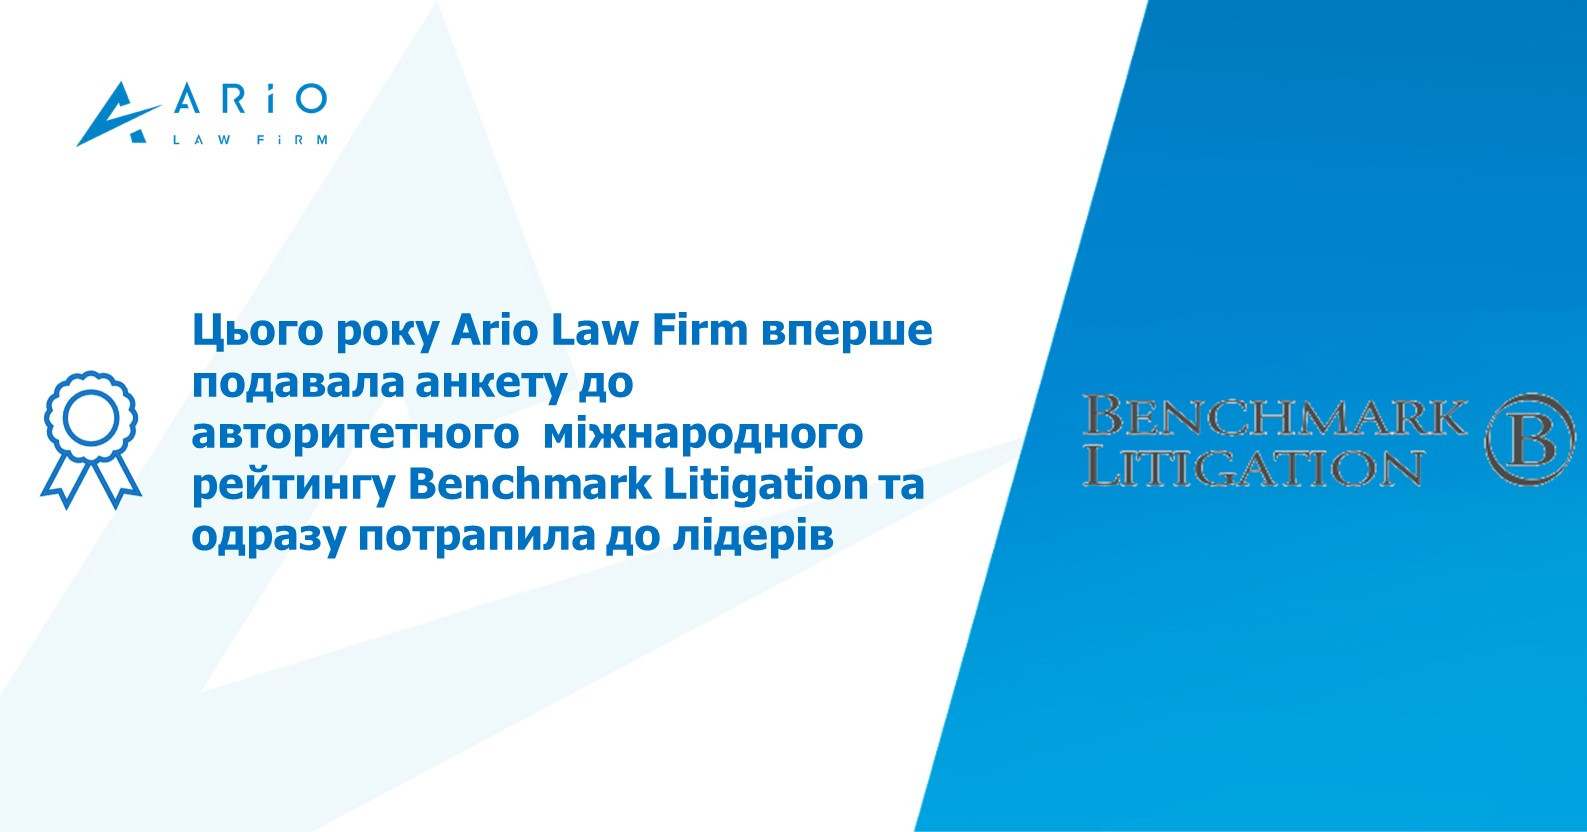 Benchmark Litigation: Ario Law Firm – серед лідерів